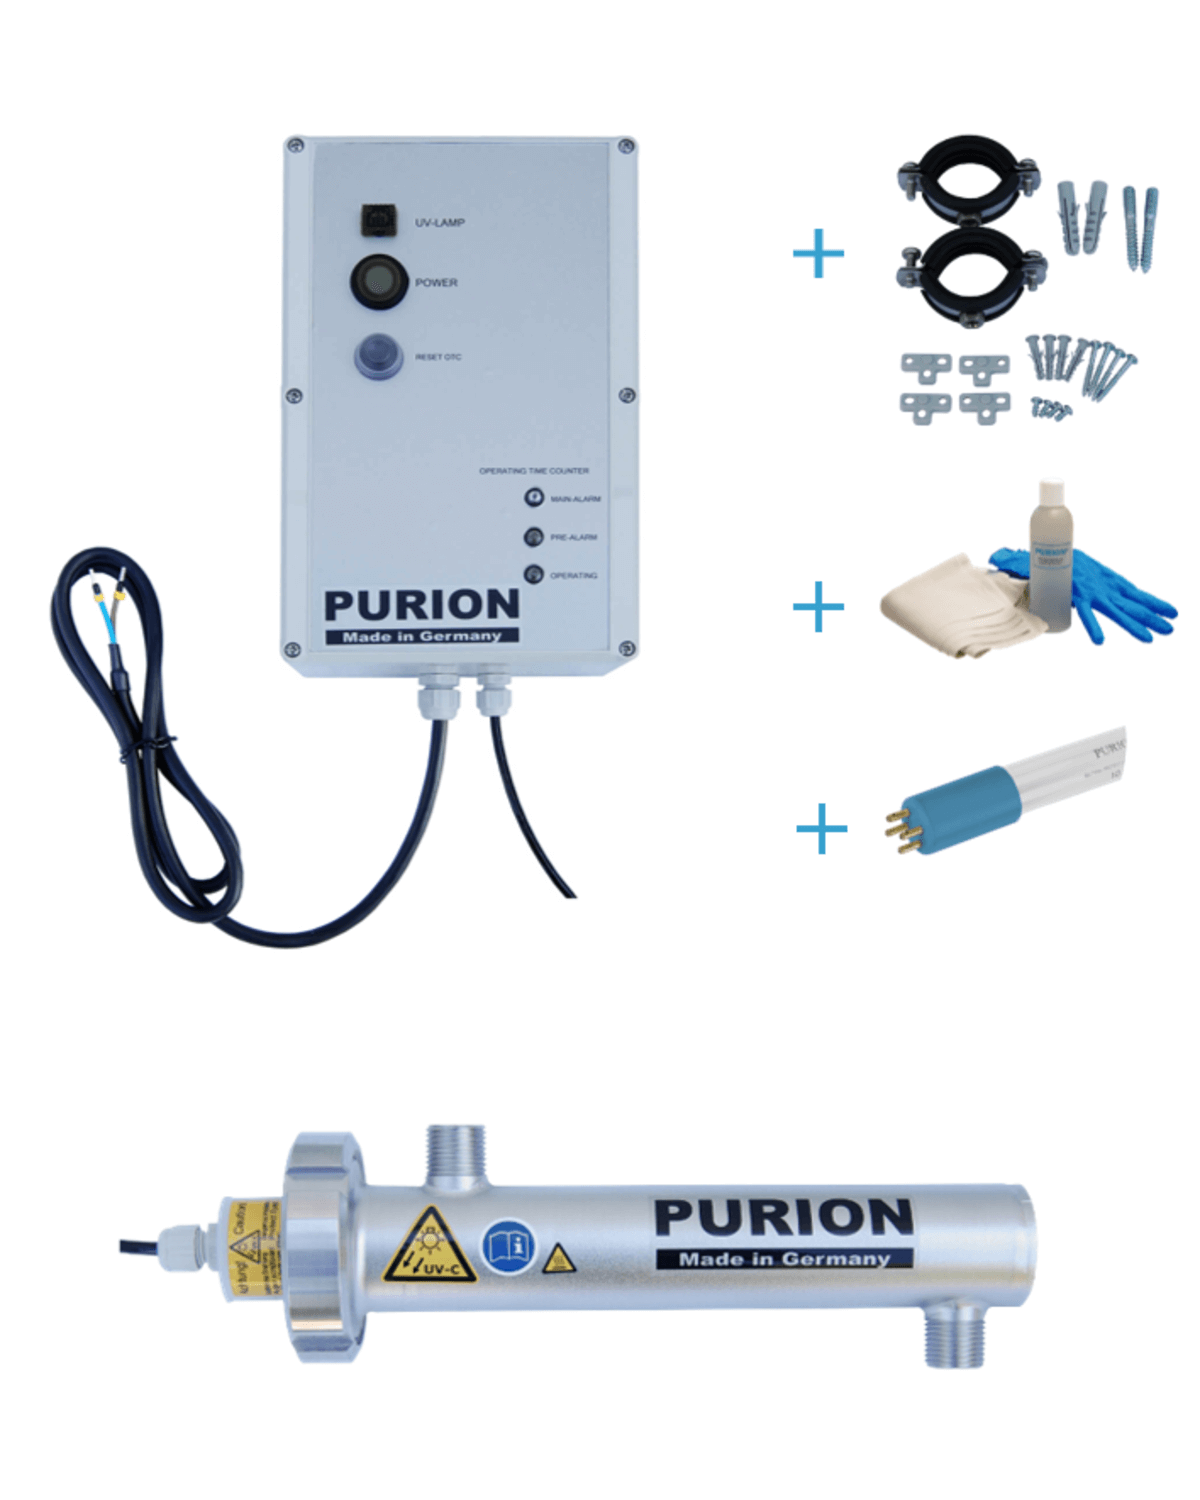 Mit dem PURION 400 OTC Bundle von PURION GmbH können Sie eine UV-C-Lampe verwenden, um entkeimtes Trinkwasser zu erhalten. Dieses innovative Gerät kann auch in kleinen Fahrzeugen verwendet werden.